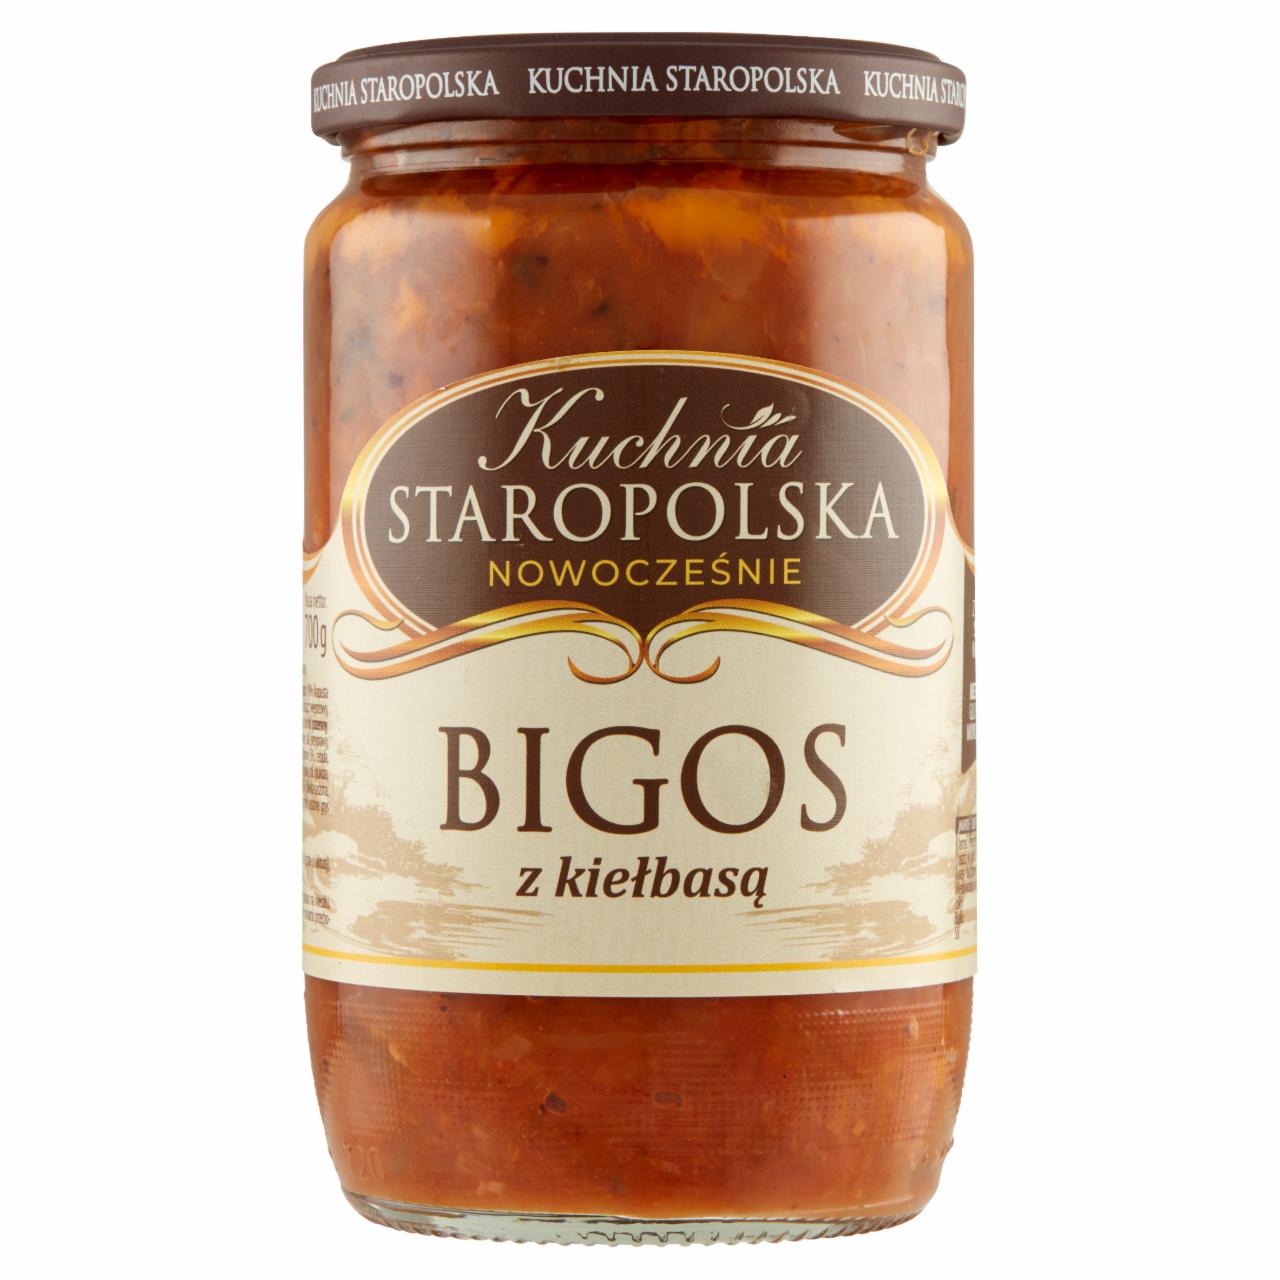 Zdjęcia - Kuchnia Staropolska Bigos z kiełbasą 700 g